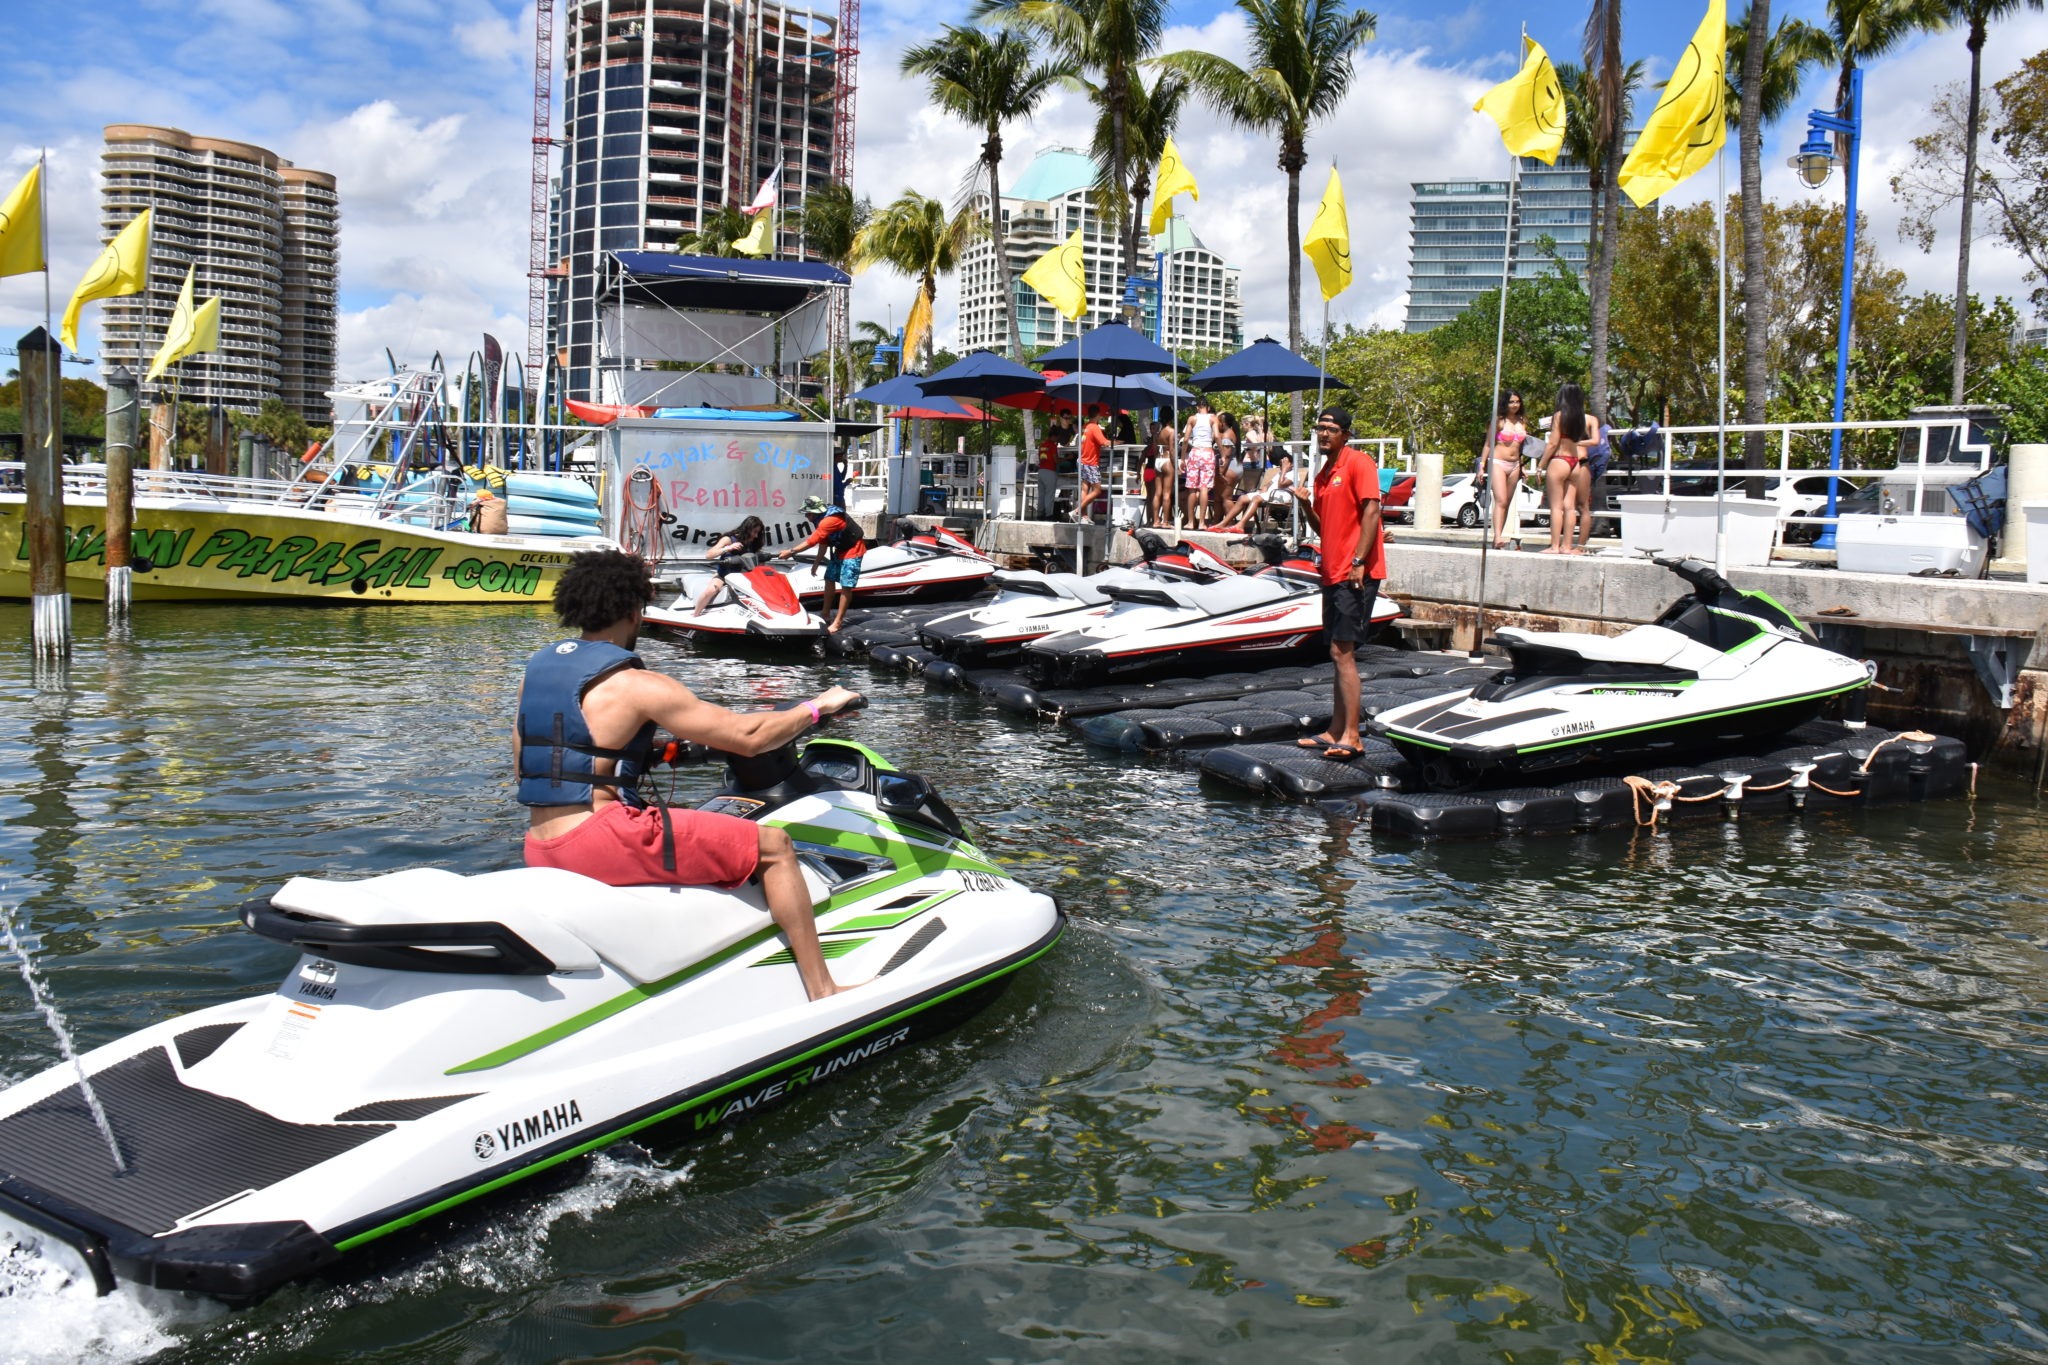 Jet Ski Rental in Miami (Top 3 Reasons to Love It)